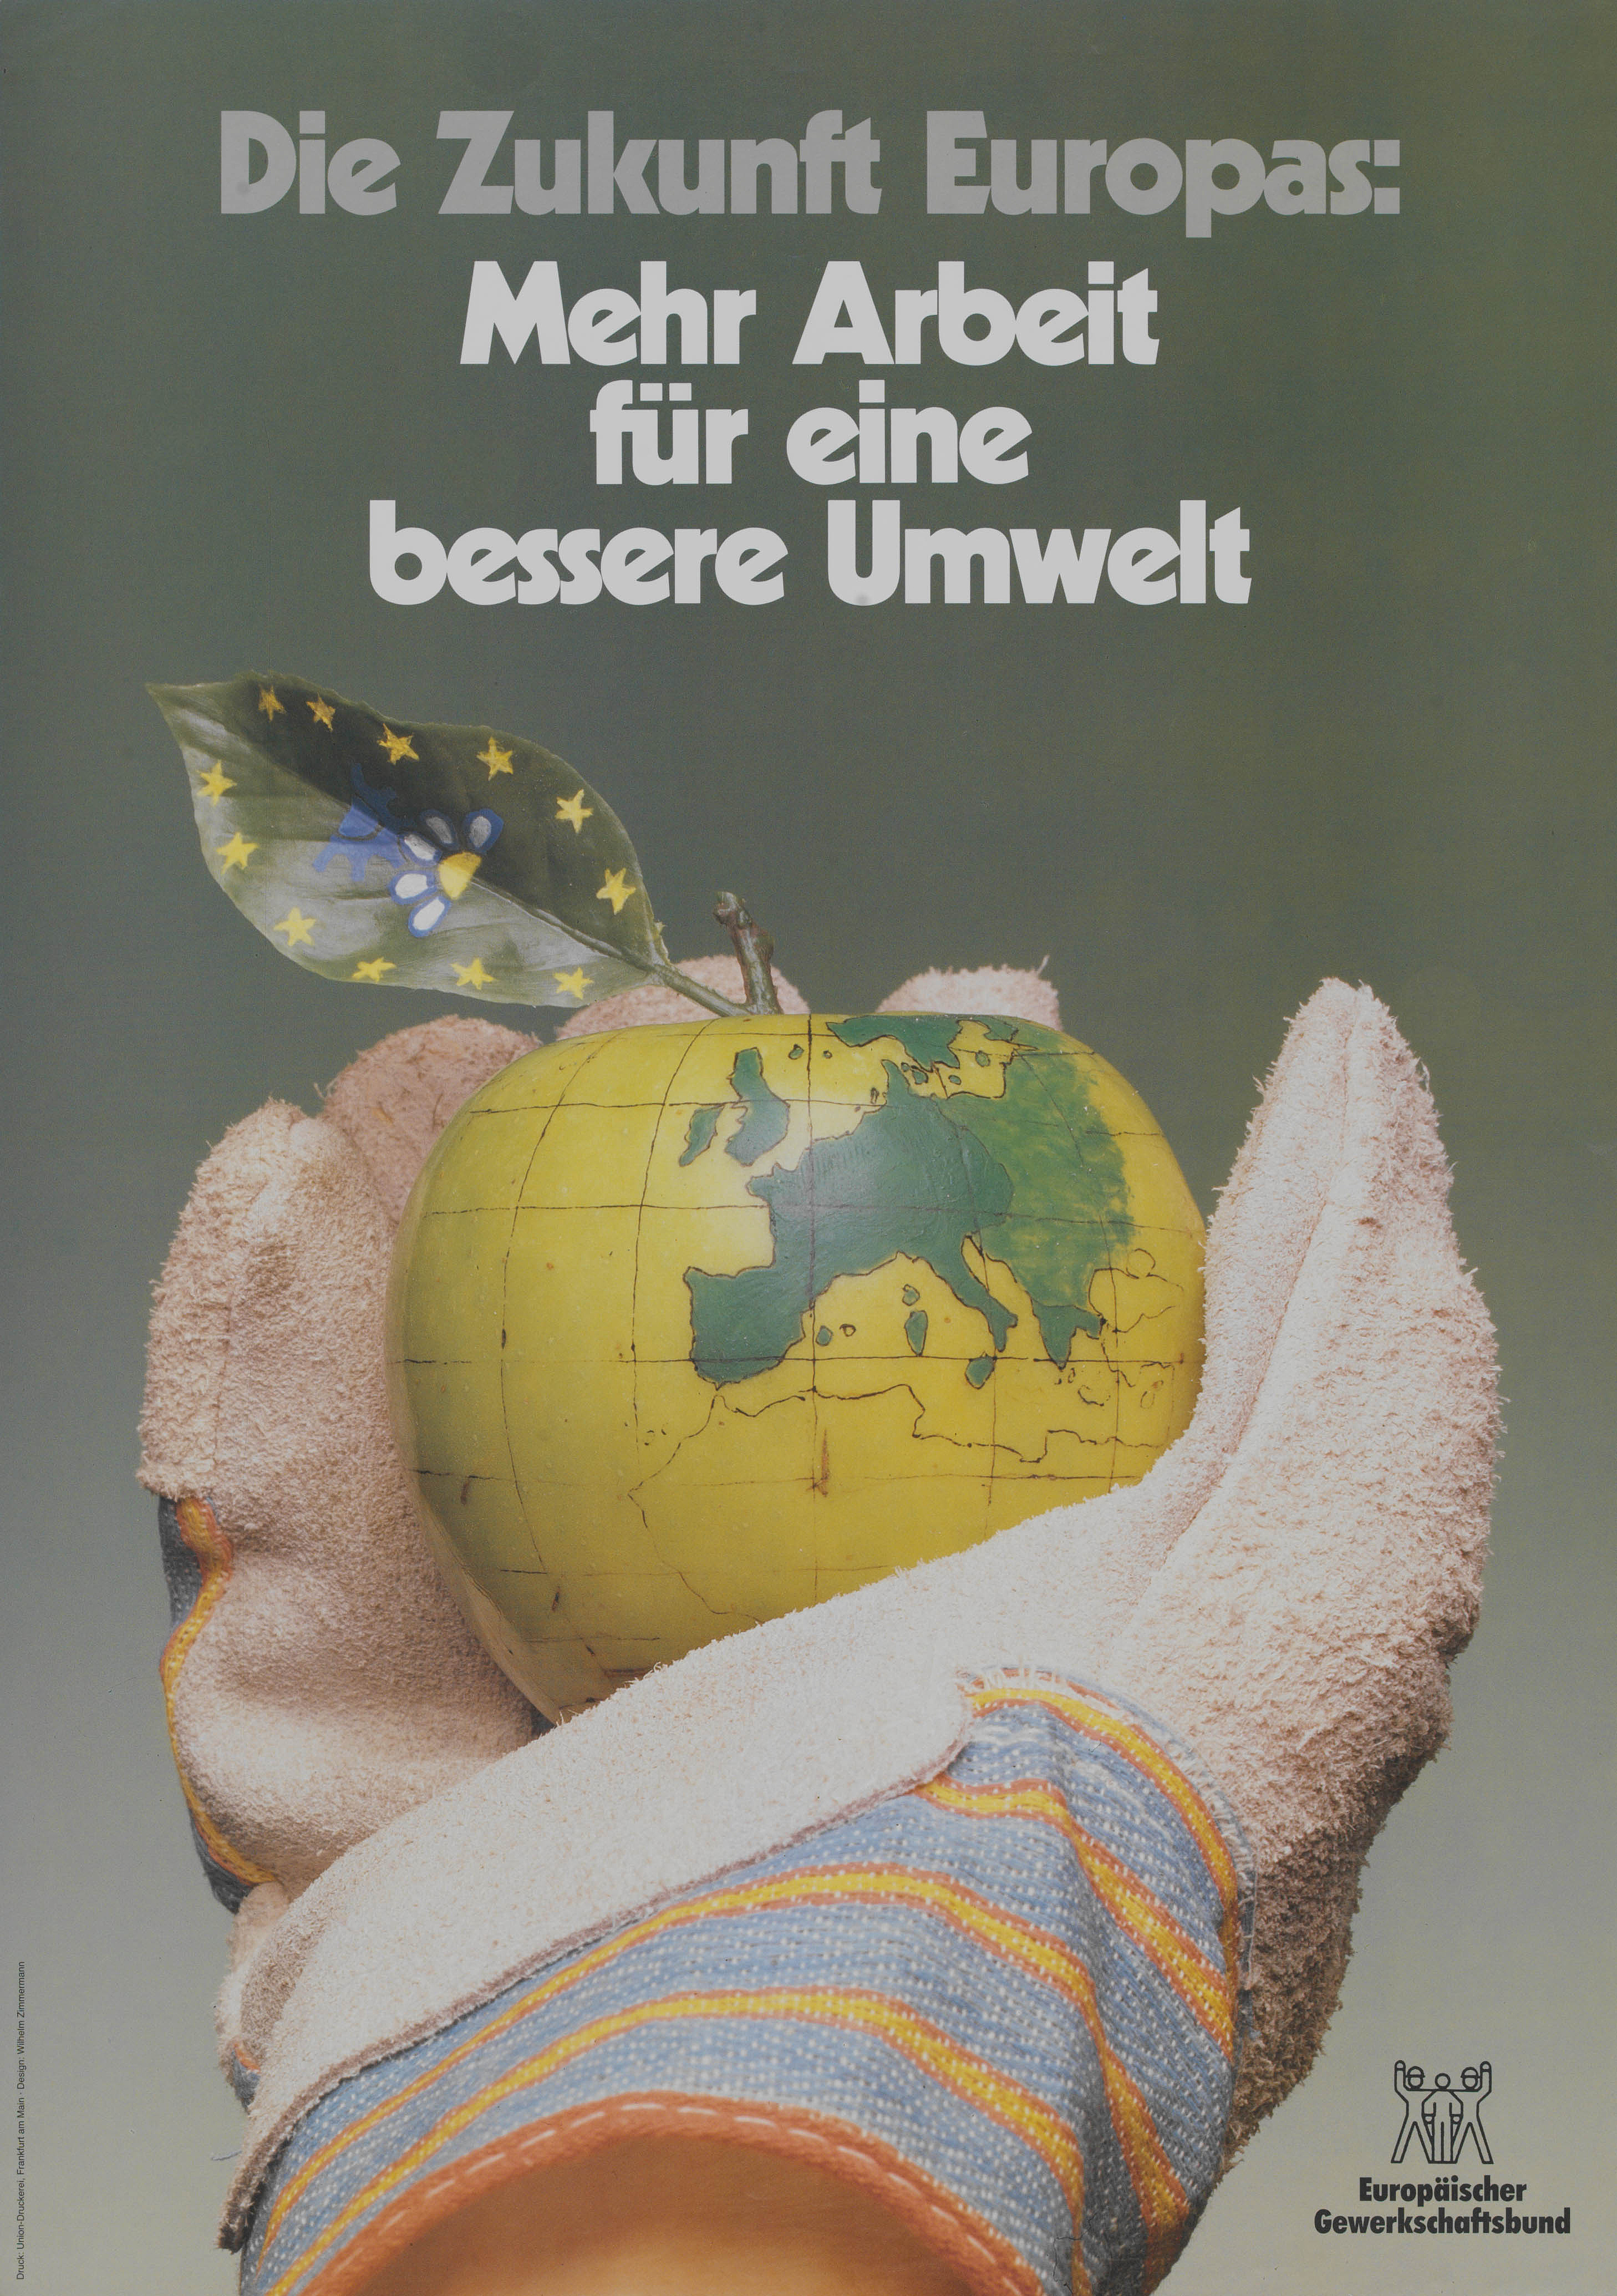 Eine Hand im Bauarbeiterhandschuh hält einen Apfel, auf dem die Umrisse eines Globus skizziert sind, Plakatbeschriftung: Die Zukunft Europas: Mehr Arbeit für eine bessere Umwelt, Europäischer Gewerkschaftsbund